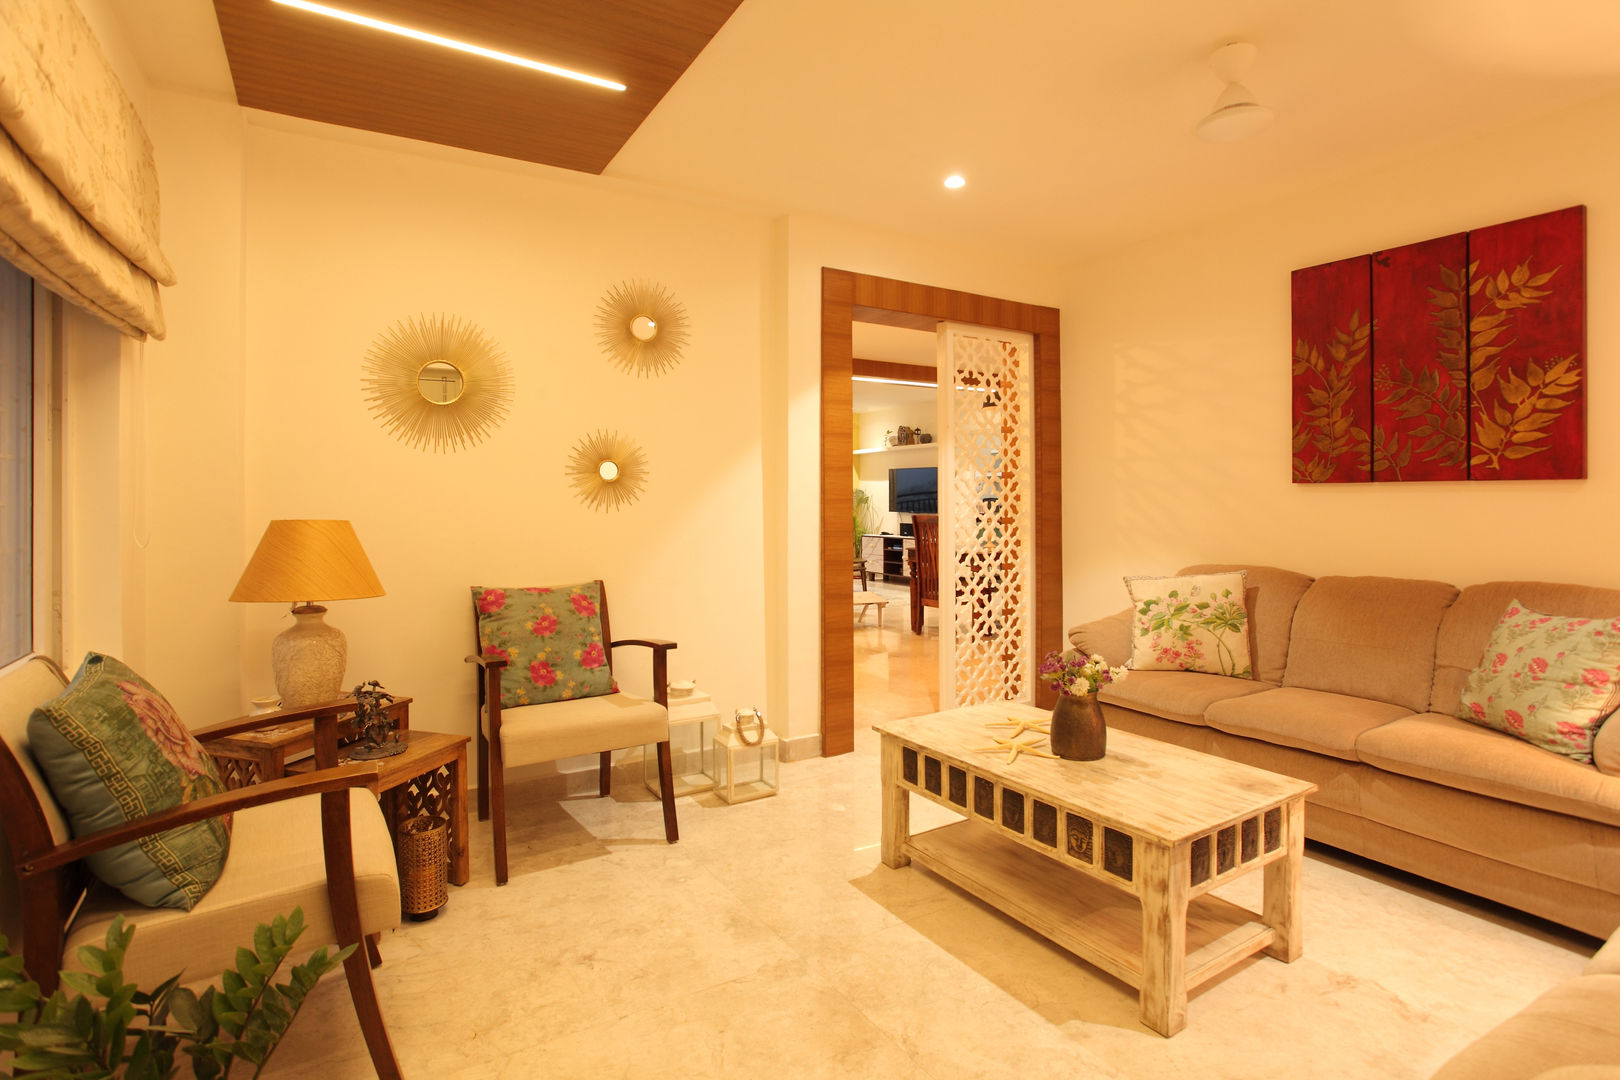 Apartment, Hyderabad, Saloni Narayankar Interiors Saloni Narayankar Interiors Salas de estilo rústico Accesorios y decoración